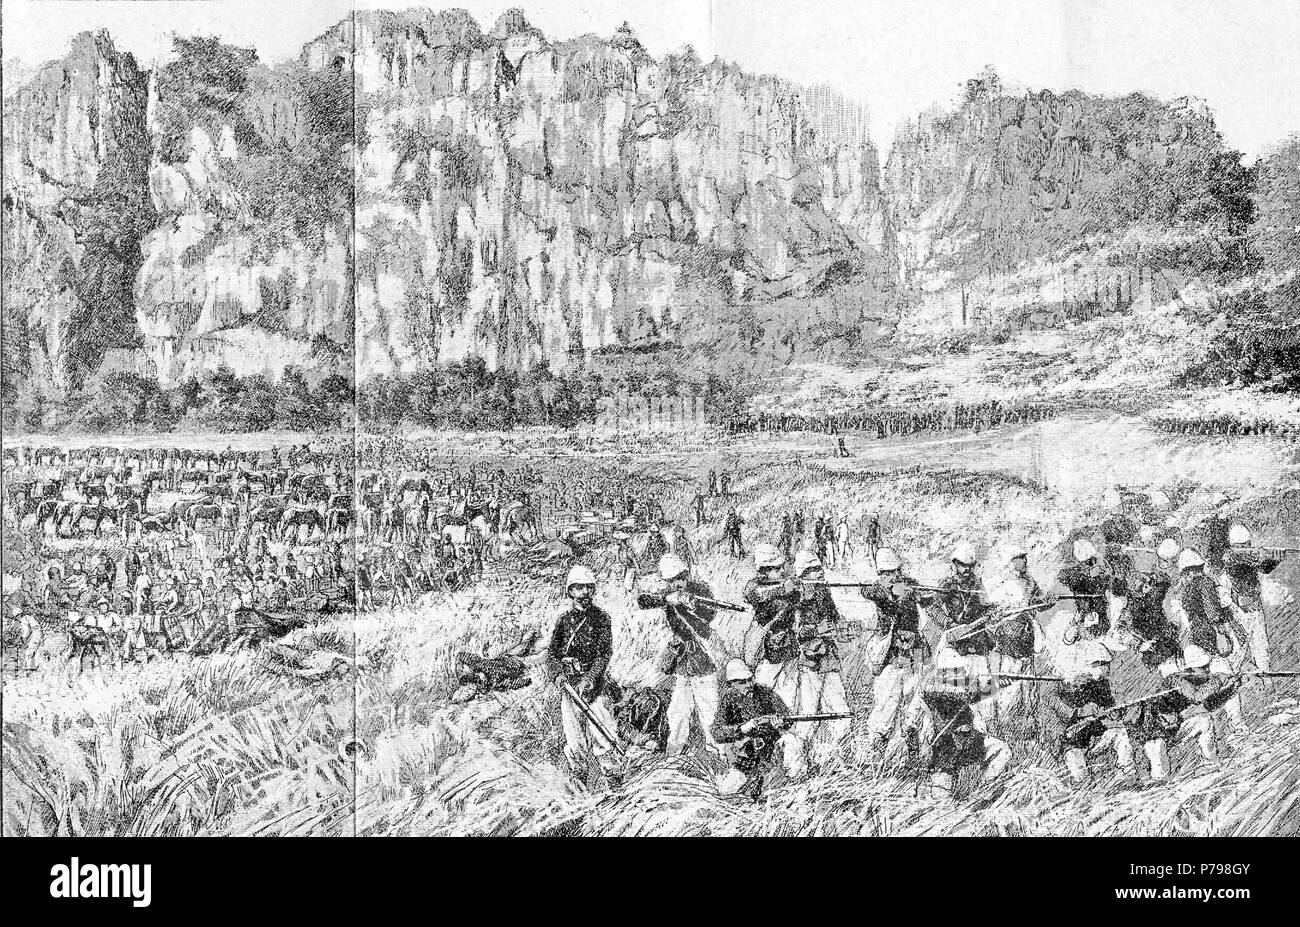 Deutsch: Das Bac Le Hinterhalt: Französische Marine Infanterie bereitzustellen unter der Nui Dong Nai Klippen, am späten Nachmittag, den 23. Juni 1884. 1890 11 Bac Le Hinterhalt Stockfoto